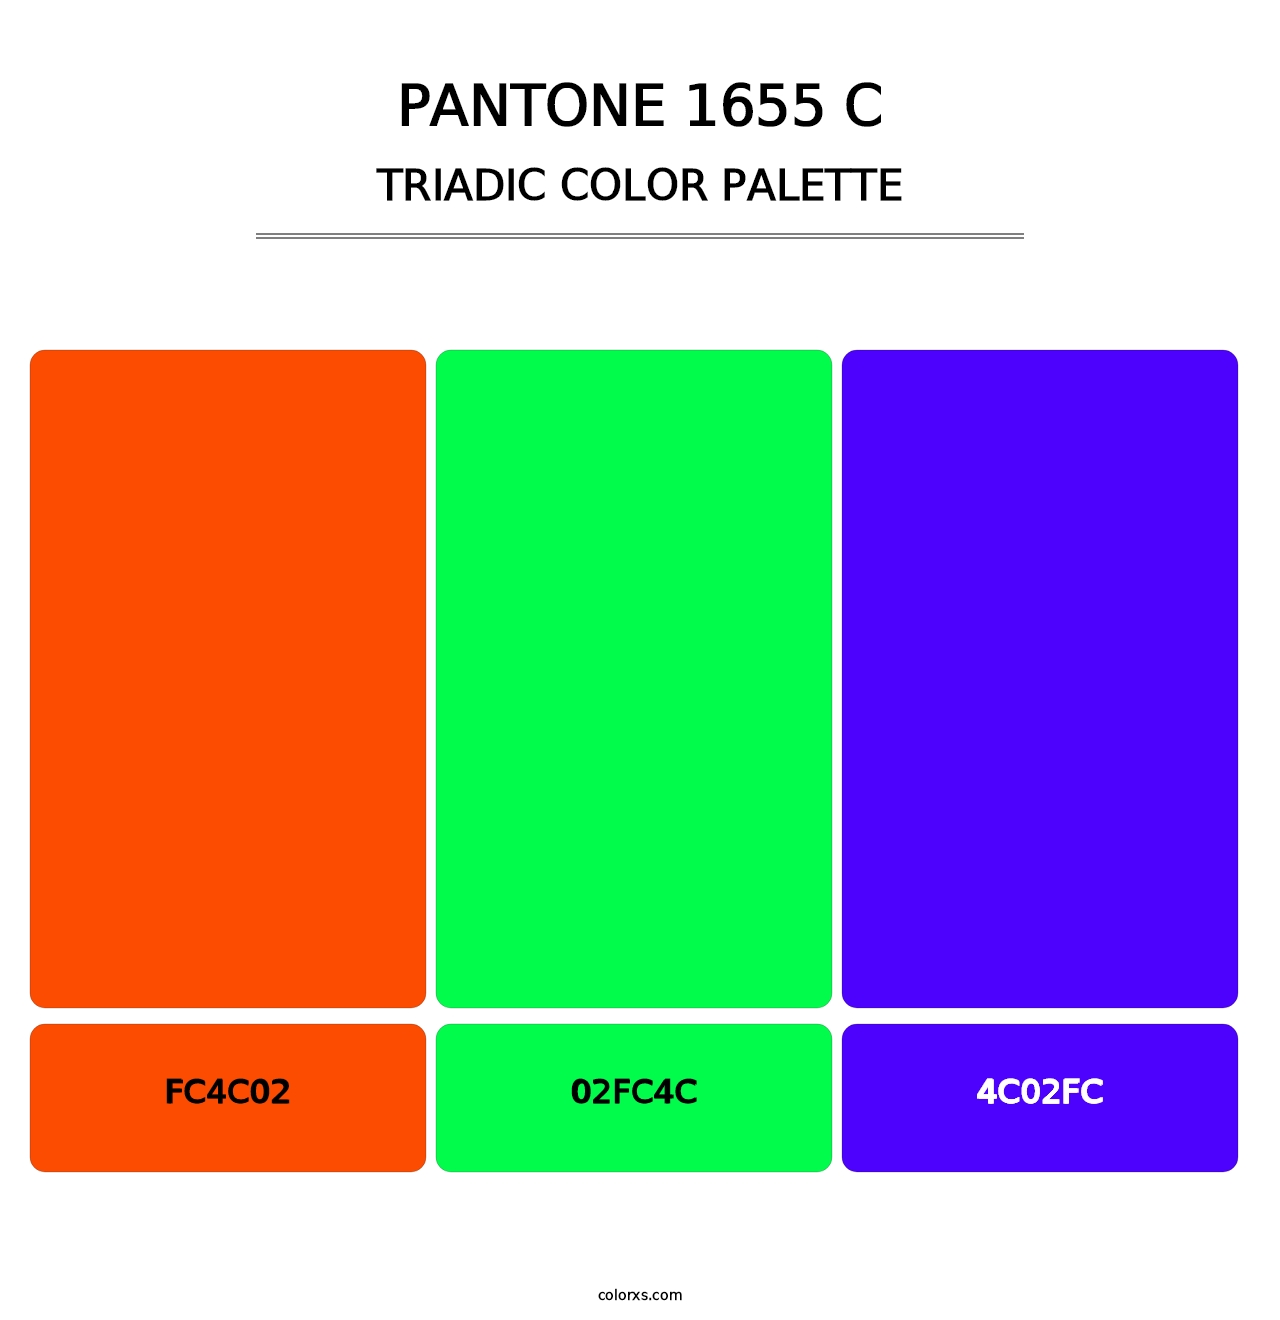 PANTONE 1655 C - Triadic Color Palette